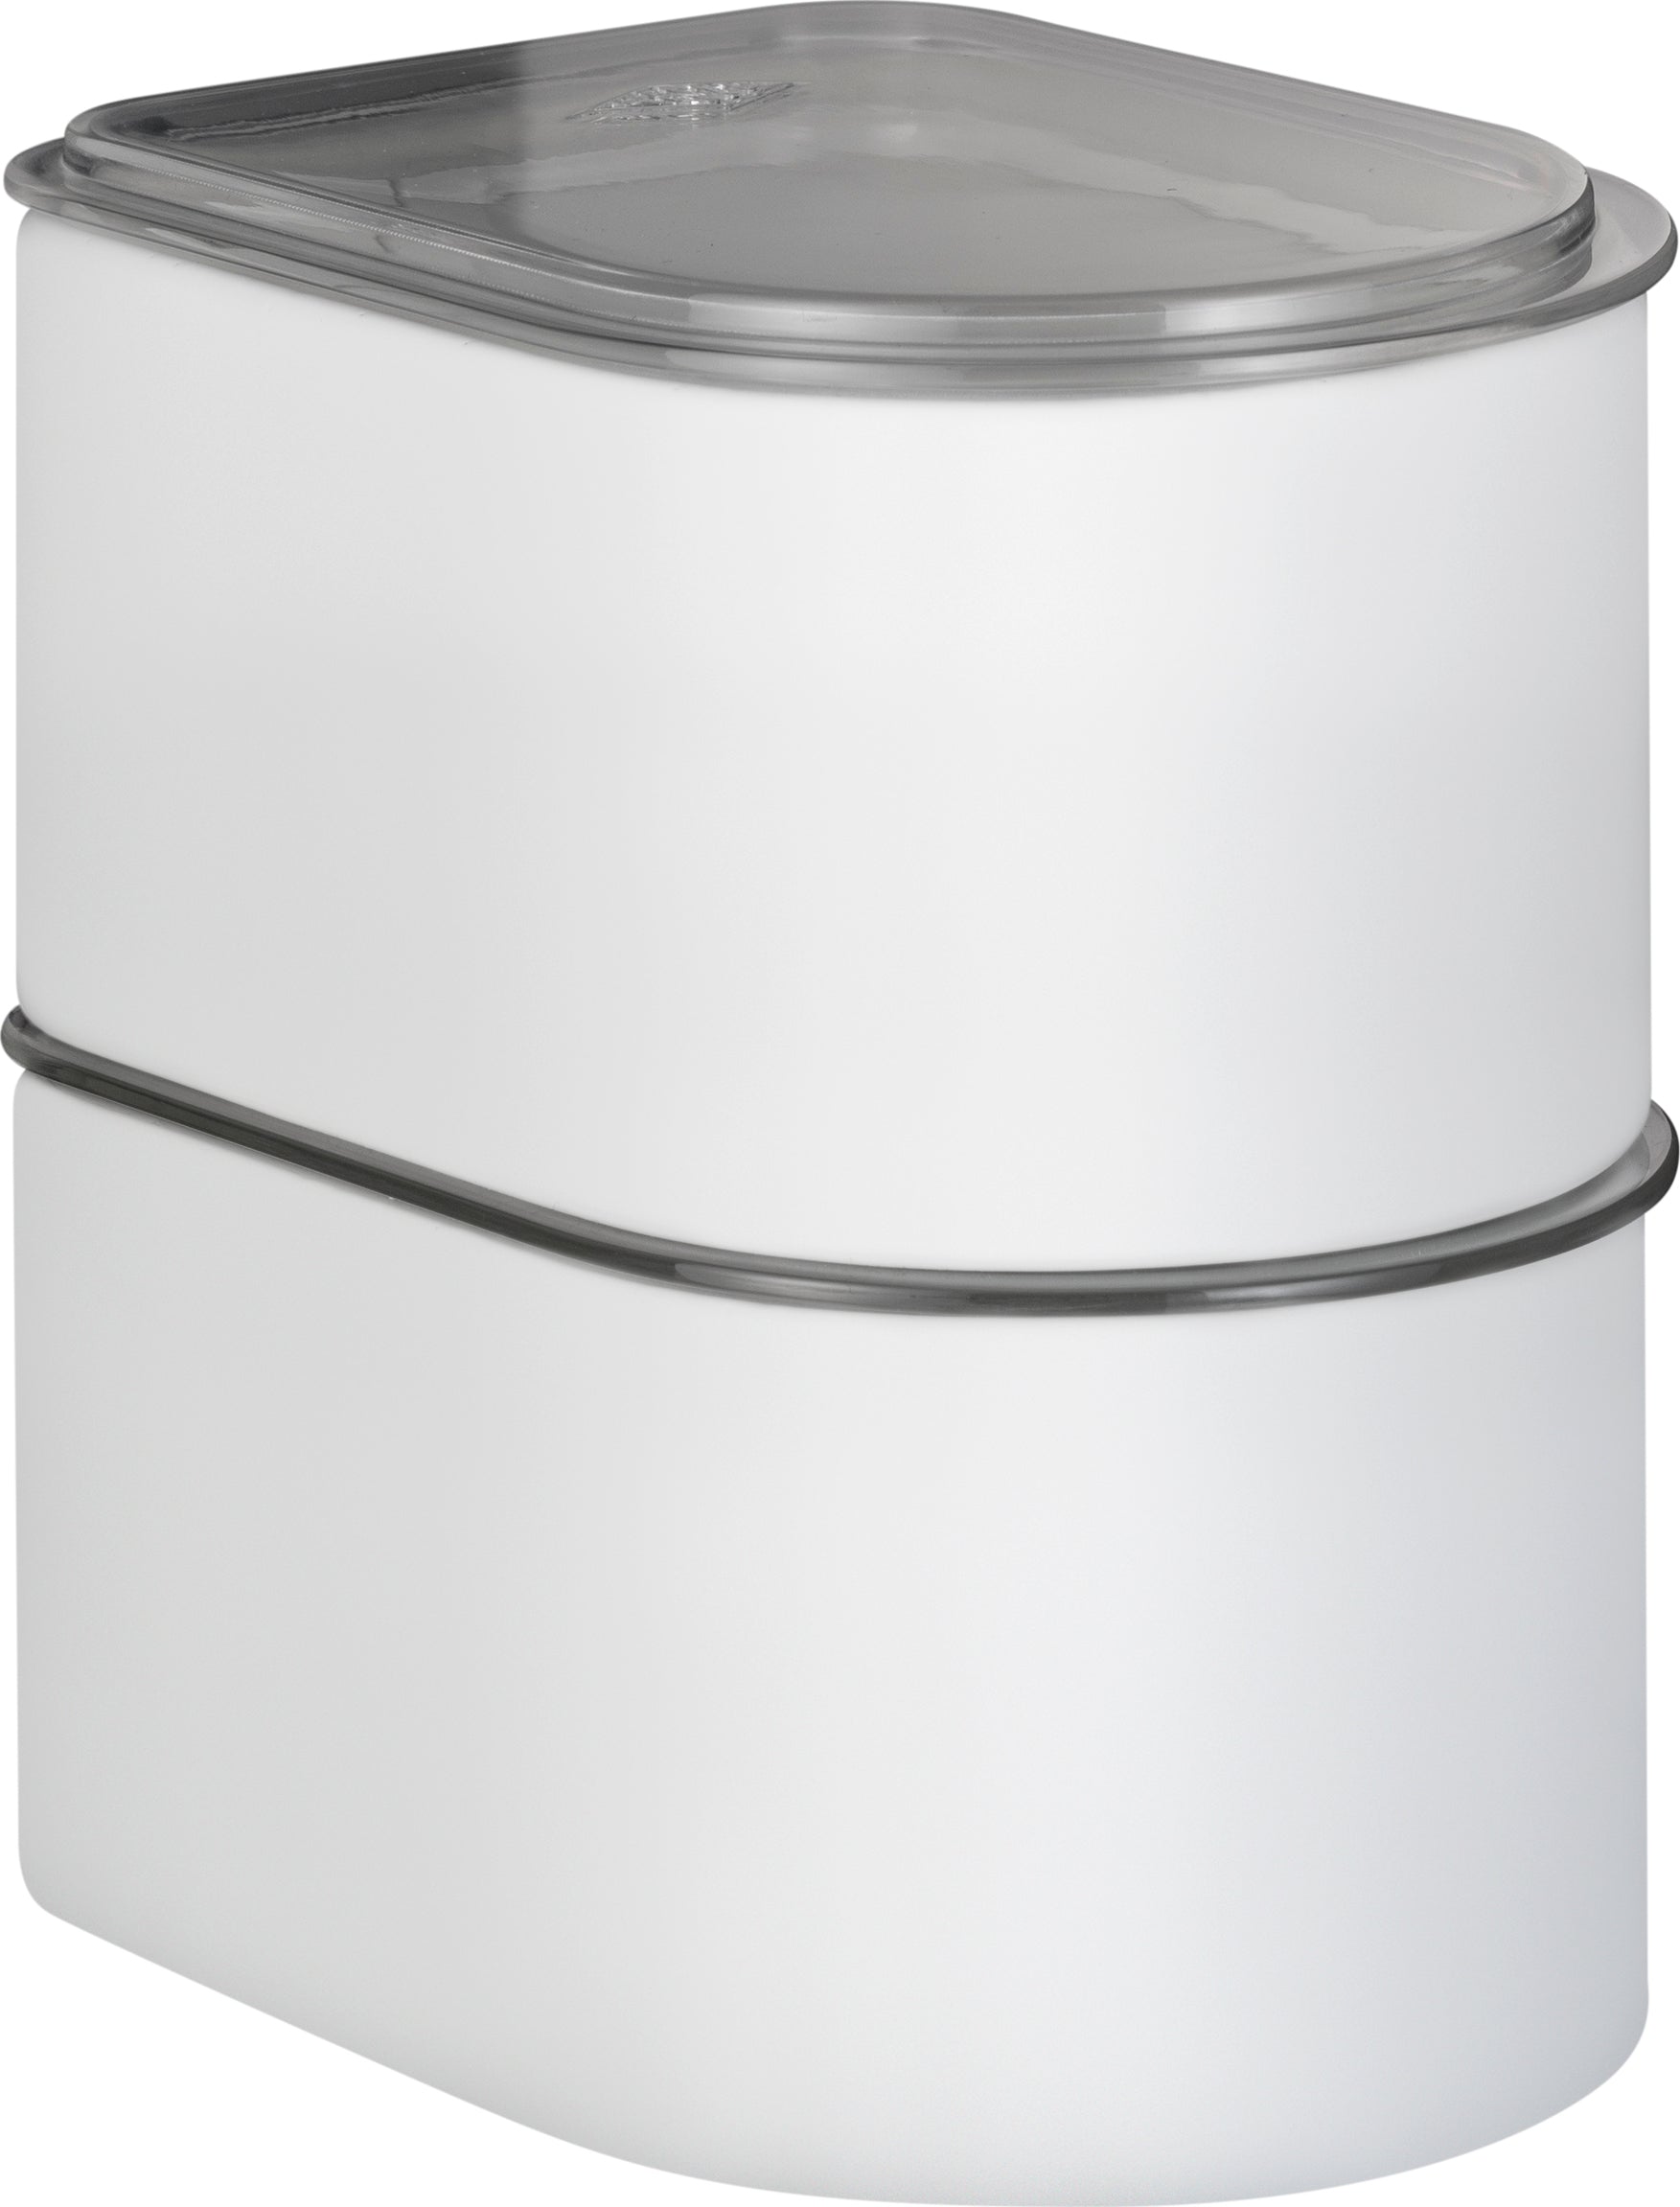 Wesco Carteter 1 litre avec couvercle acrylique, graphite Matt